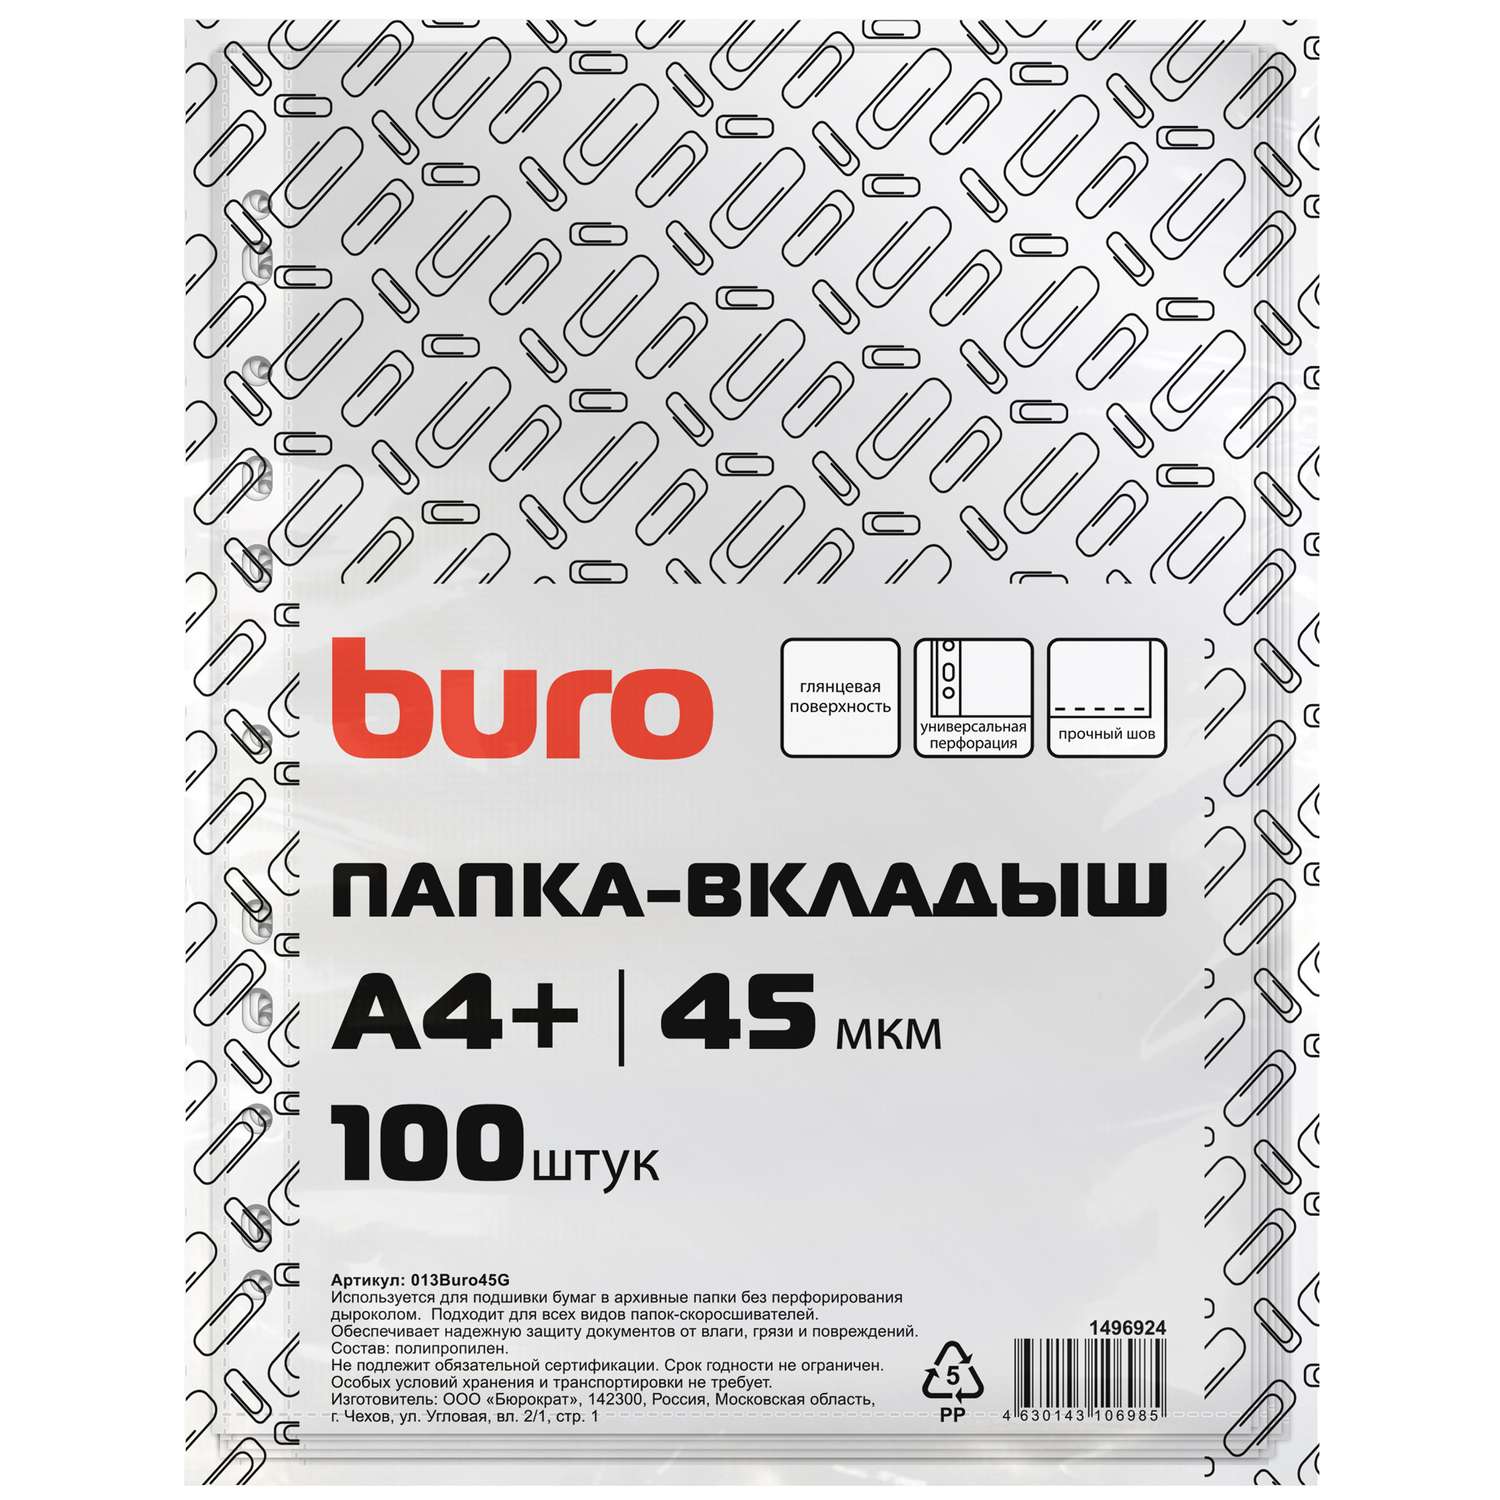 Файлы-вкладыши Buro глянцевые А4+ 45мкм упаковка 100 шт - фото 1